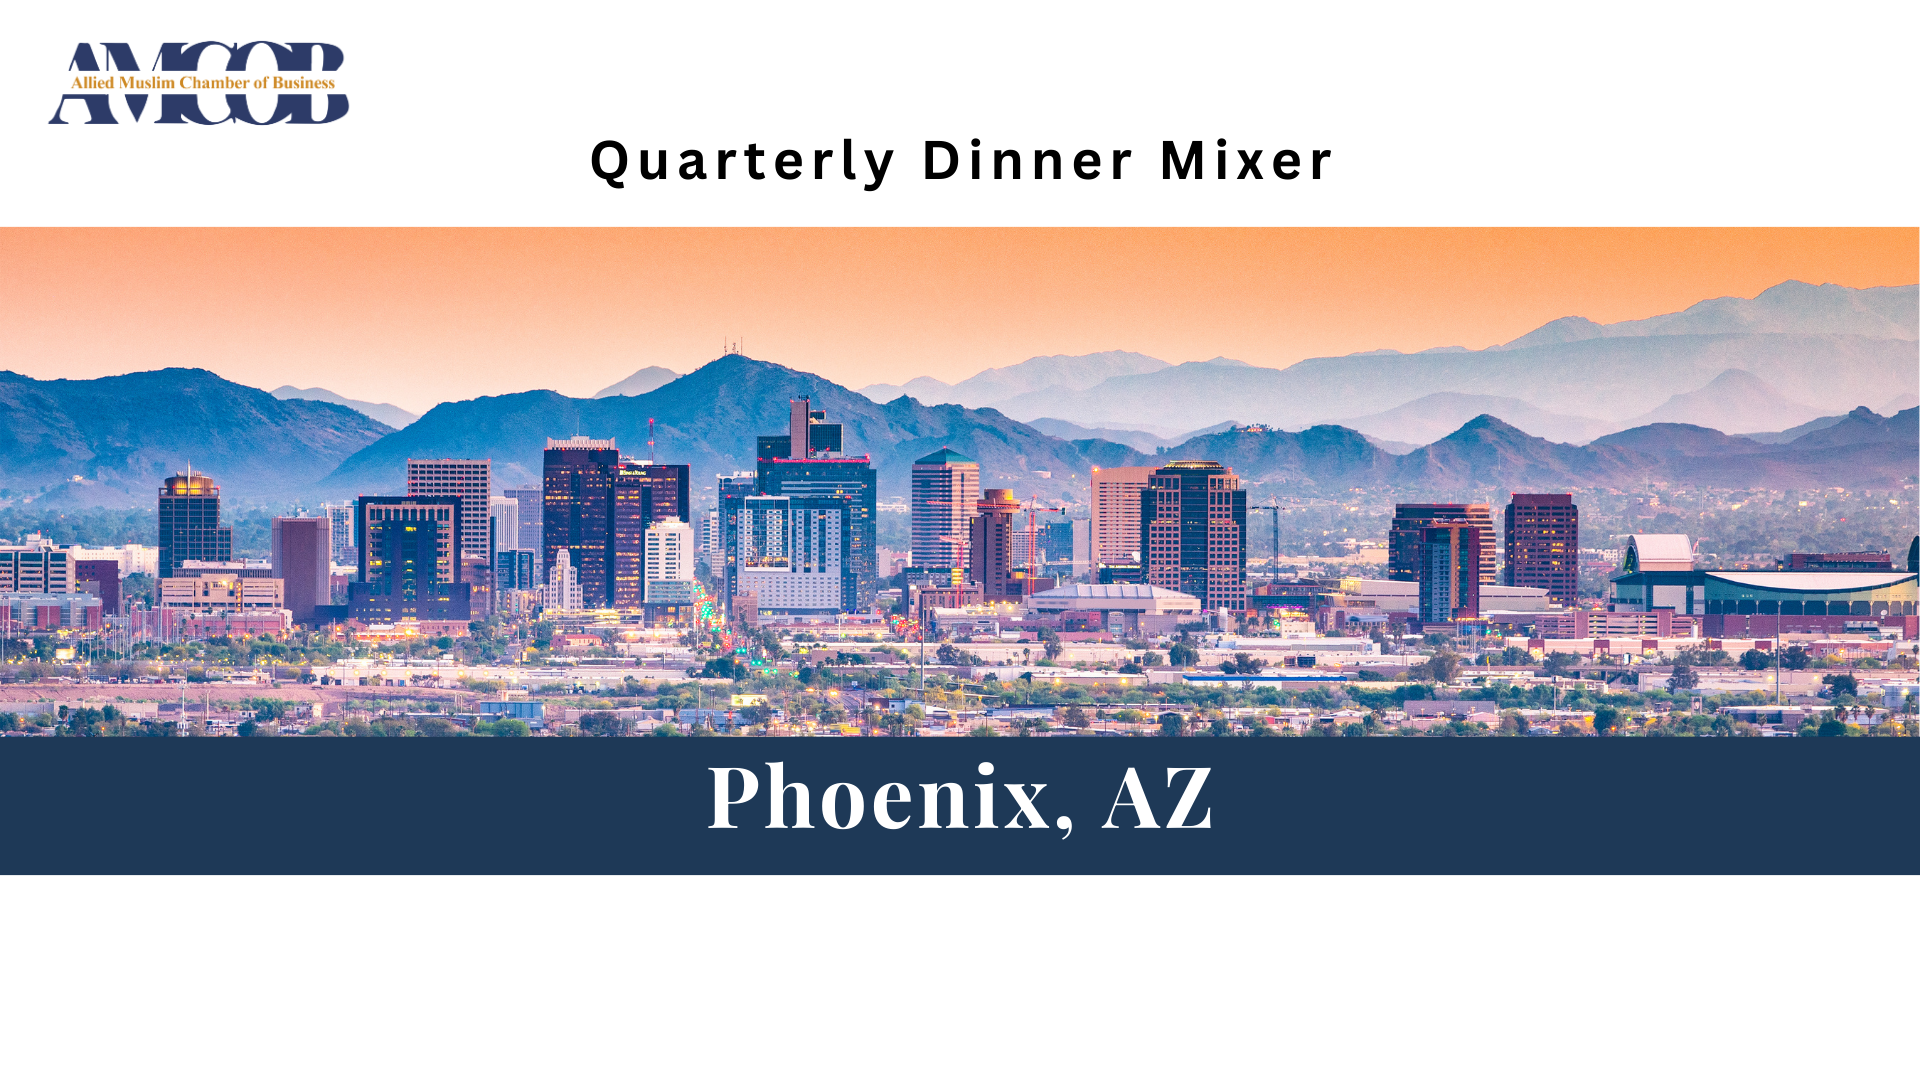 Phoenix, AZ: Quarterly Dinner Mixer